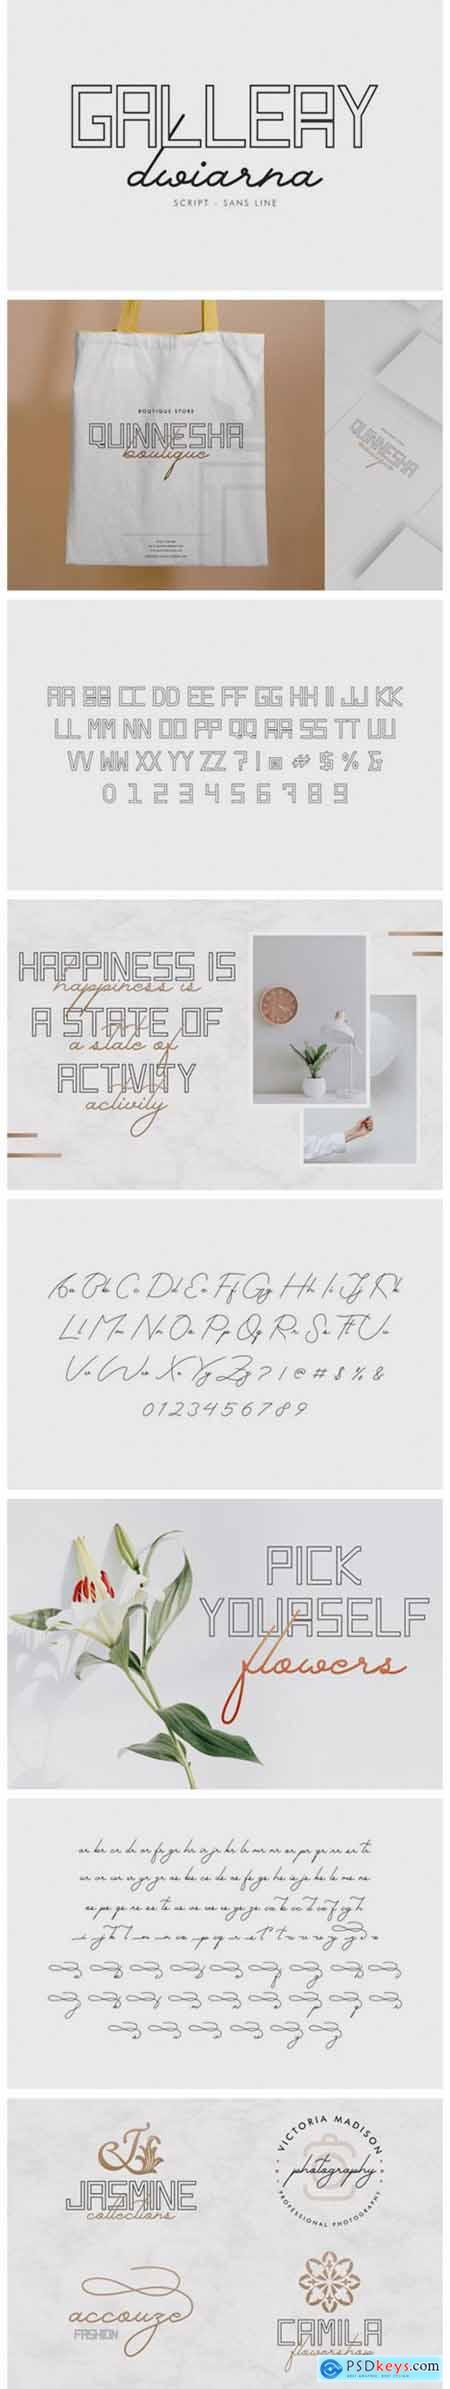 Gallery Dwiarna Font